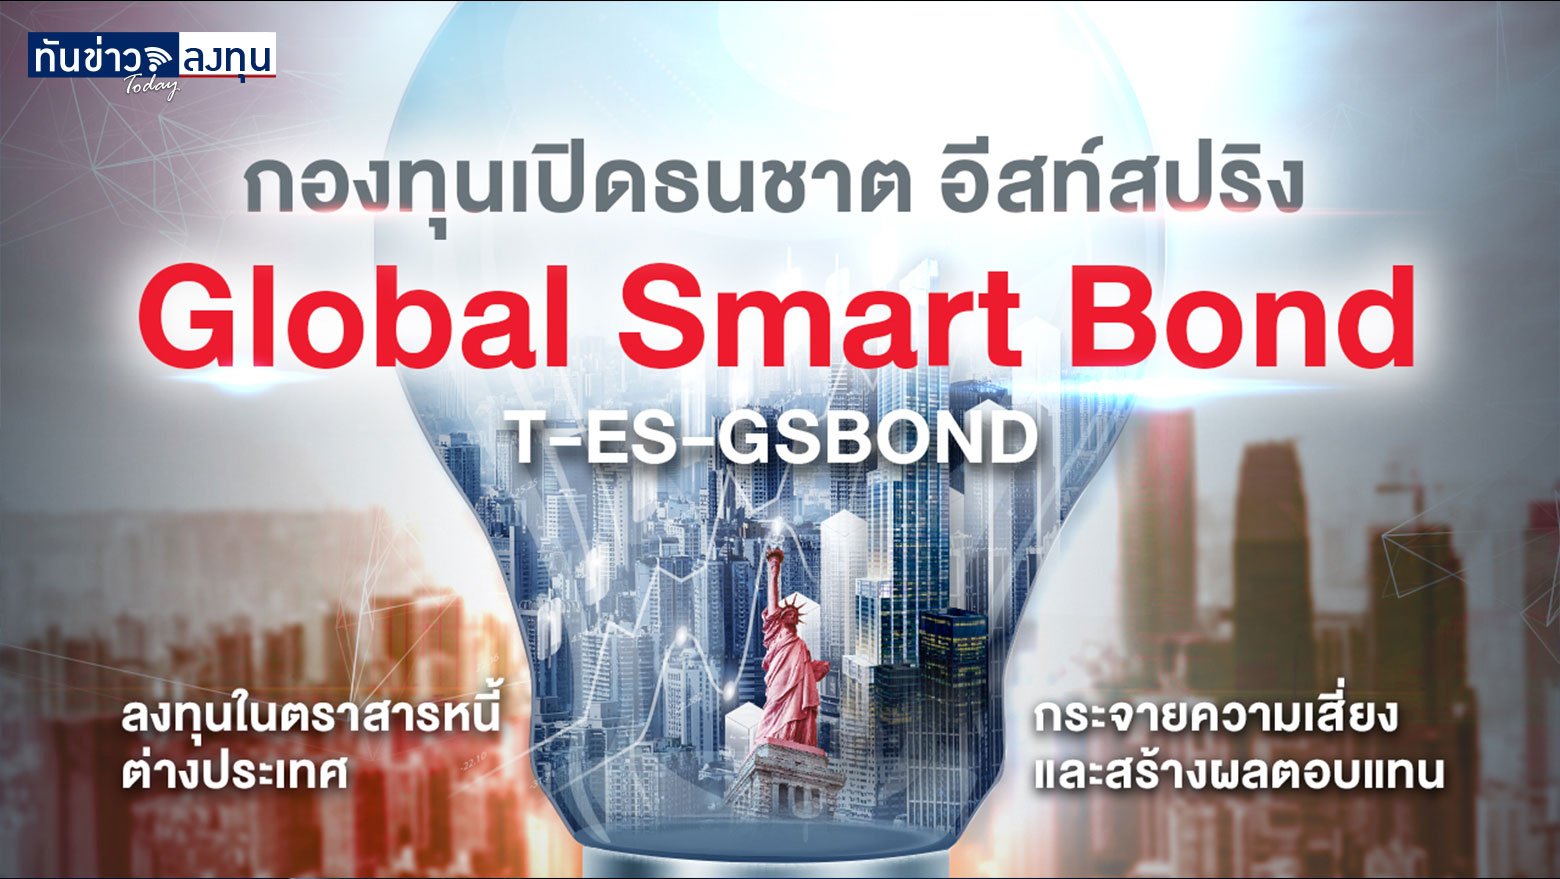 กองทุนเปิดธนชาต อีสท์สปริง Global Smart Bond (T-ES-GSBOND)